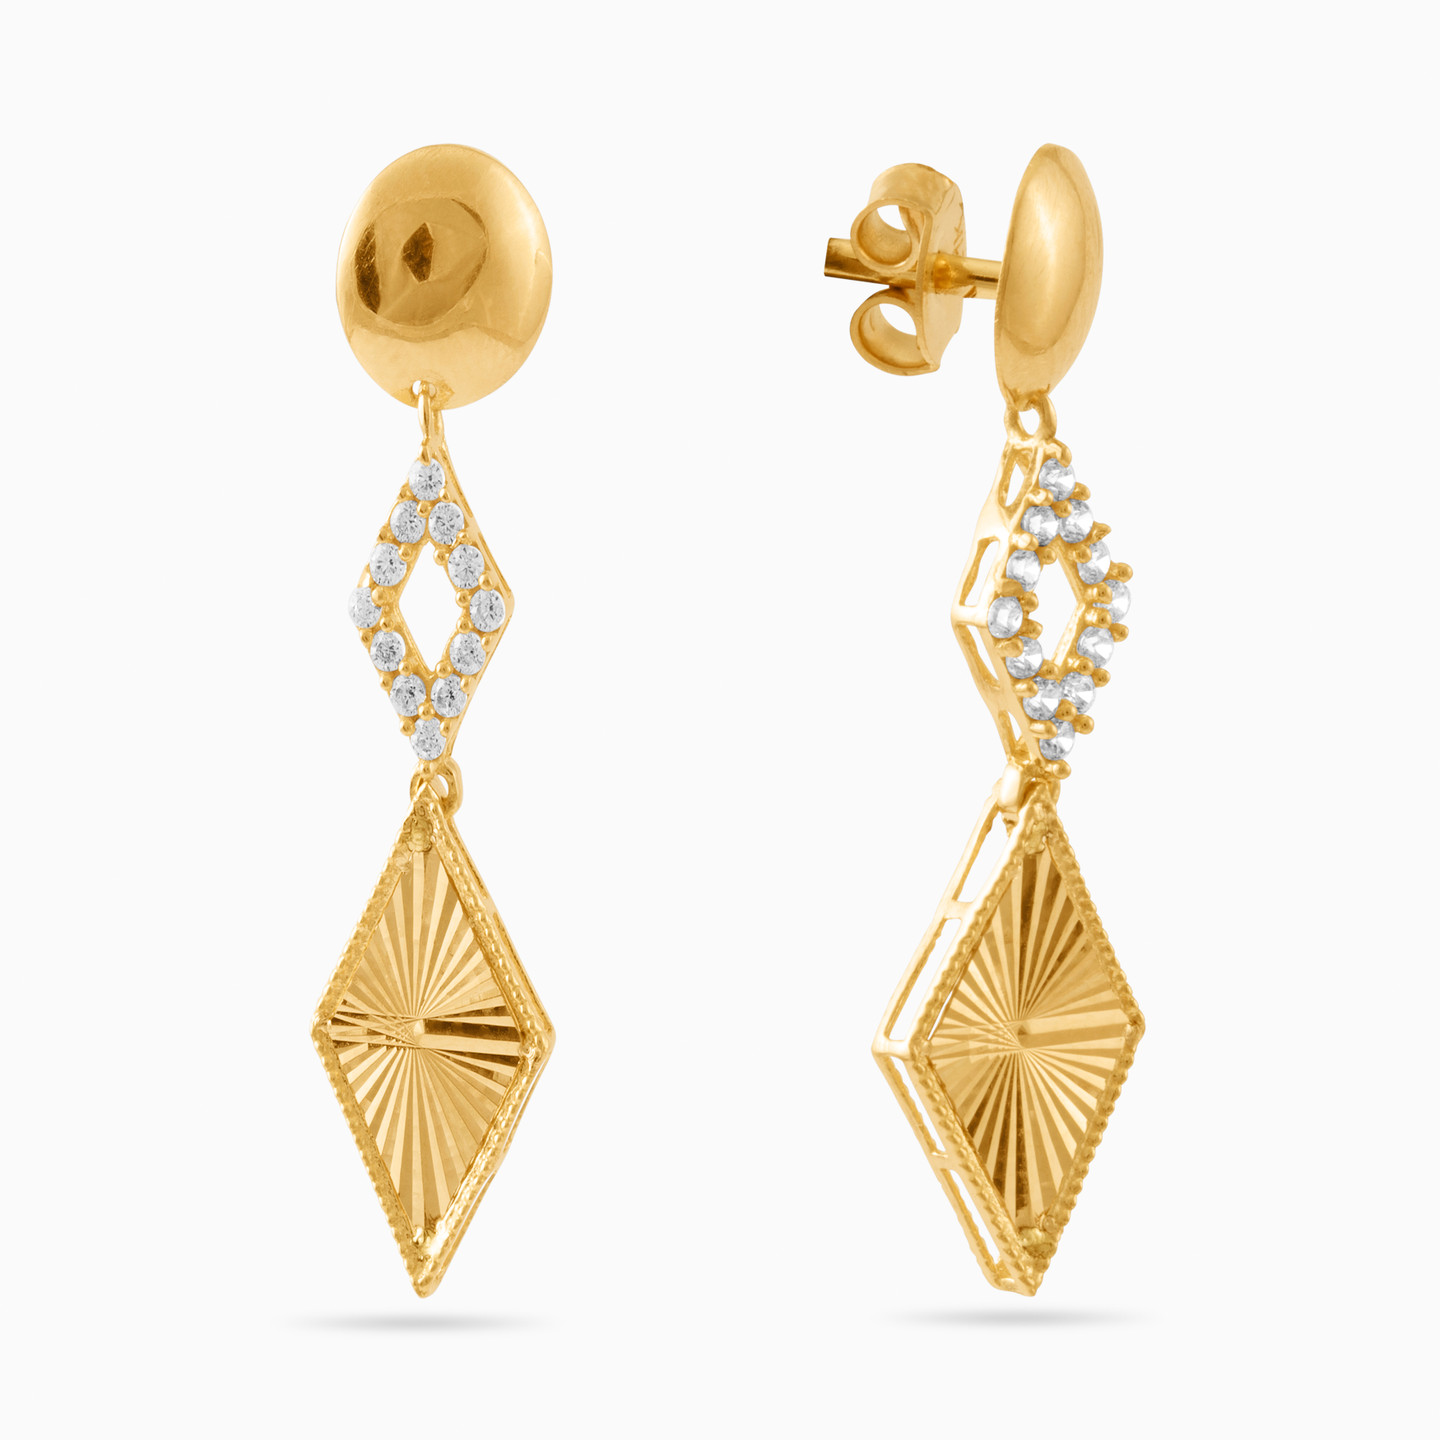 21K Gold Cubic Zirconia Drop Earrings - 2